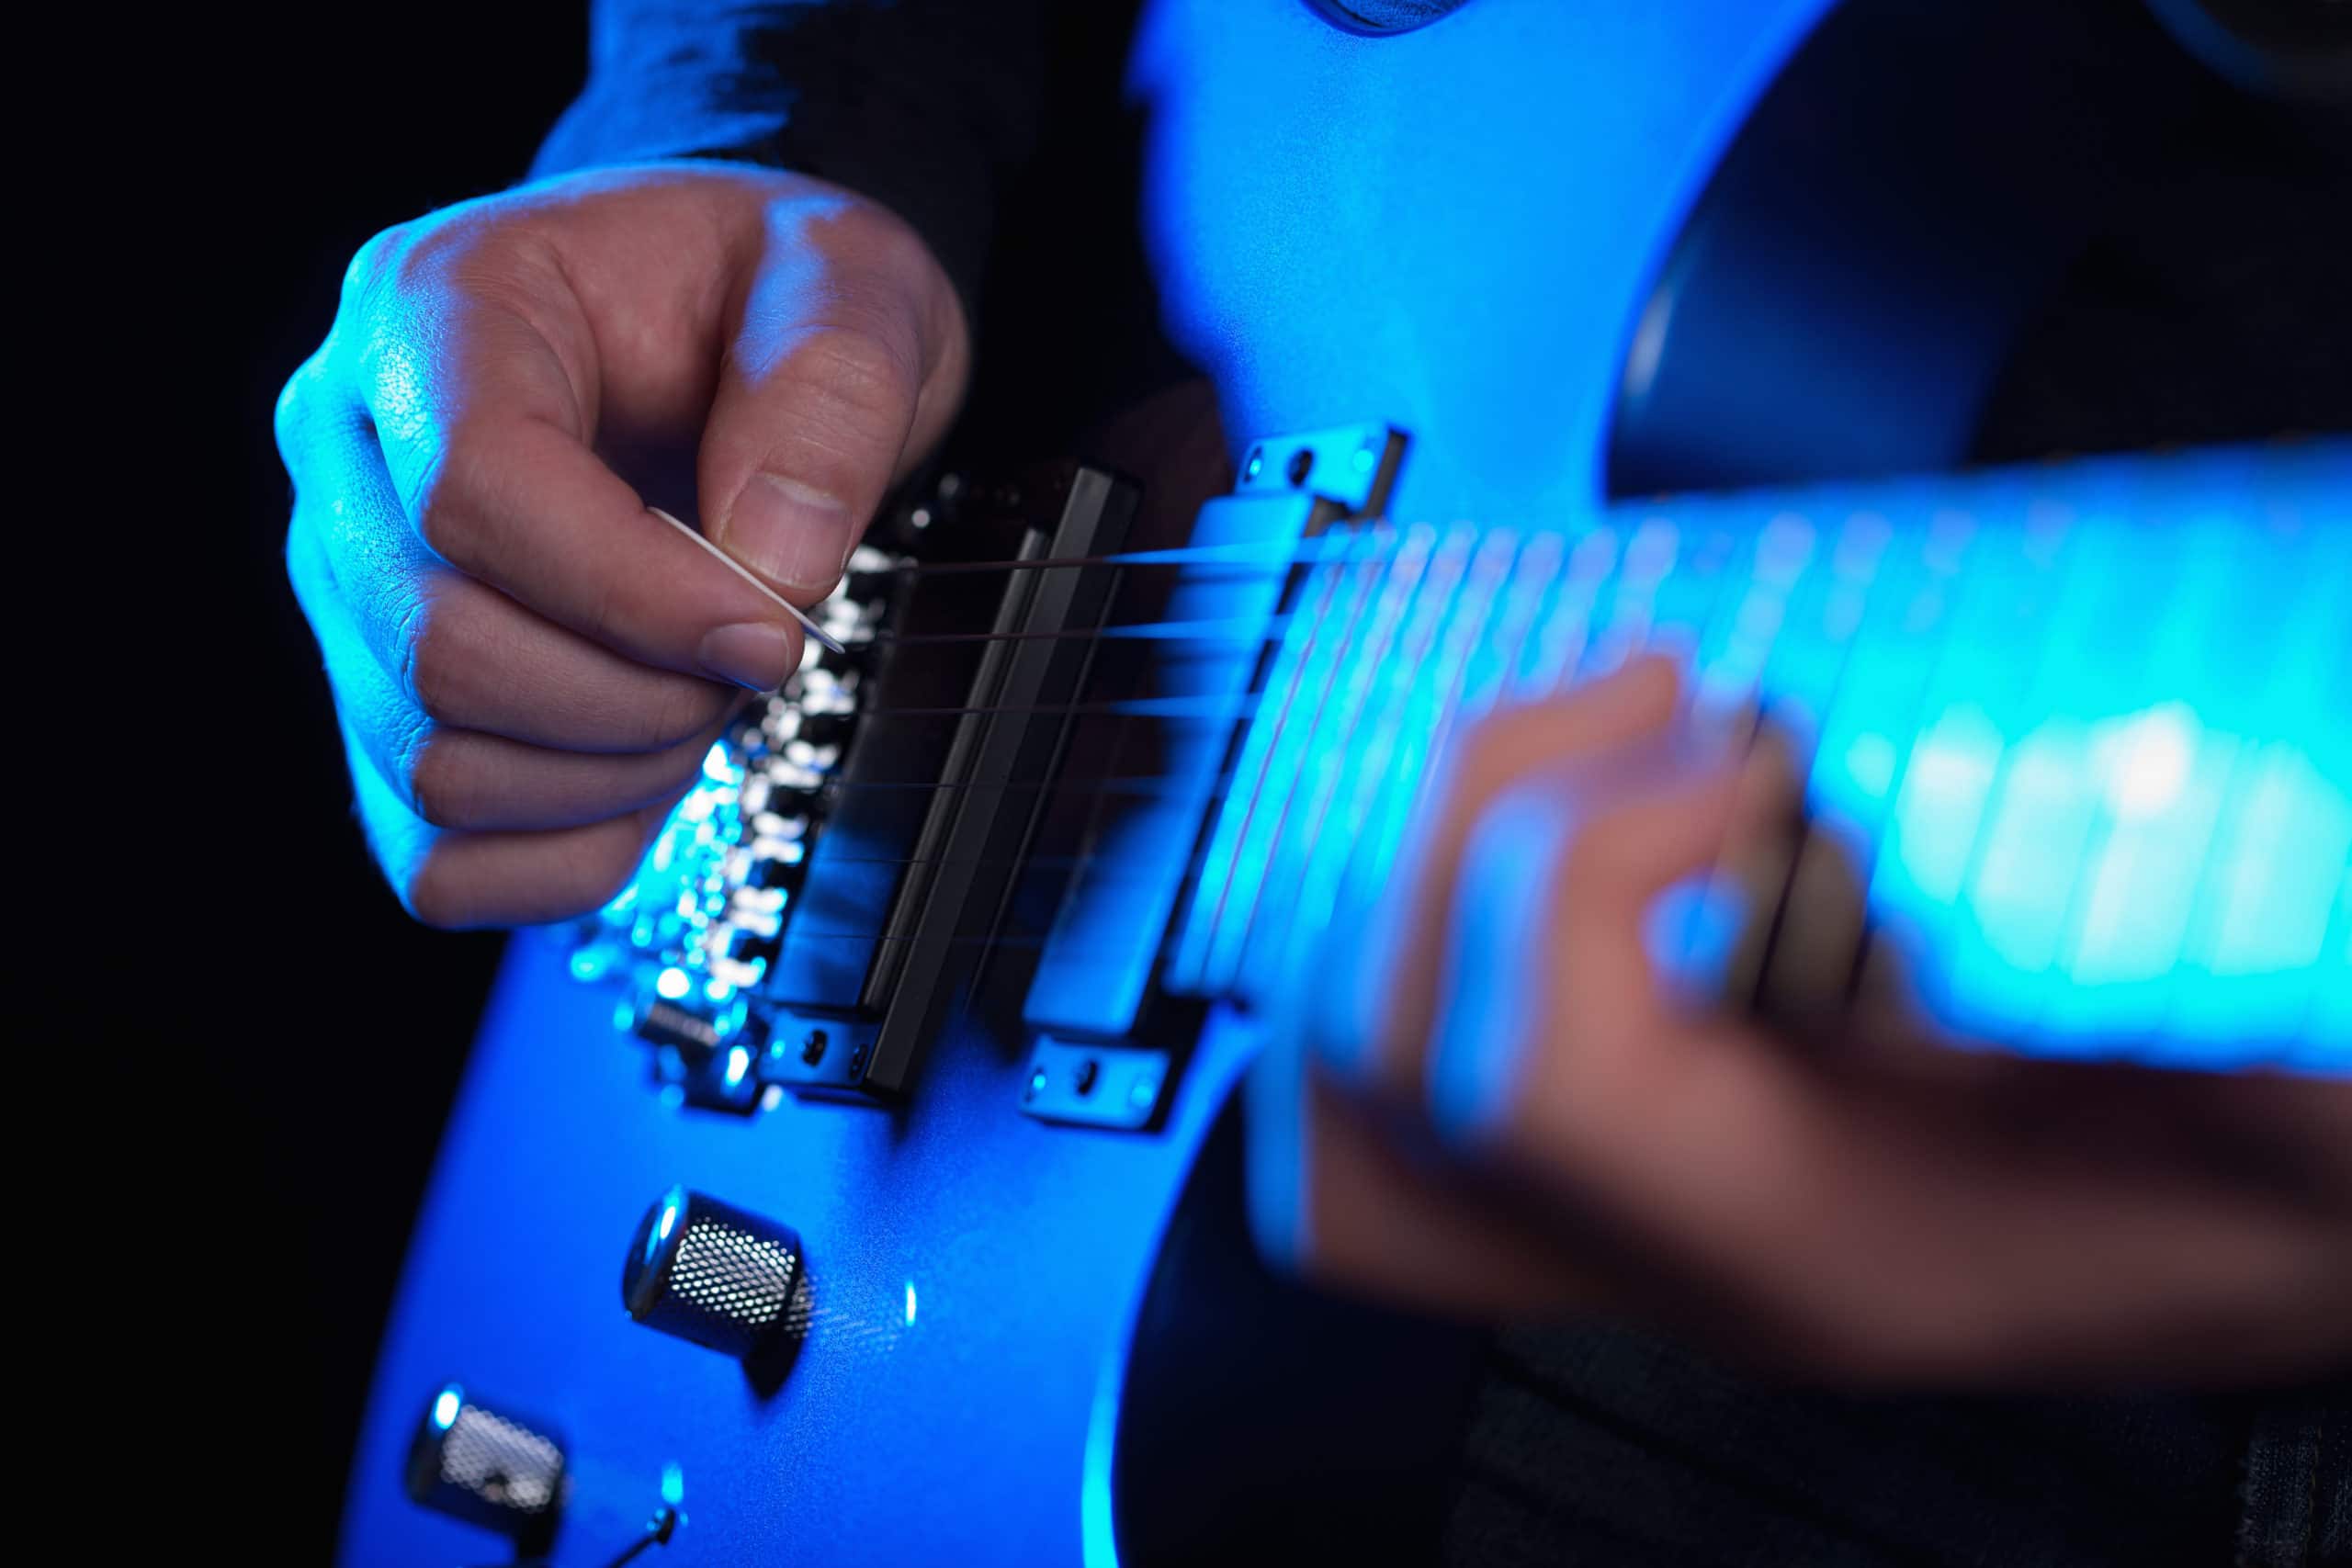 musician rock guitarist playing a blue guitar